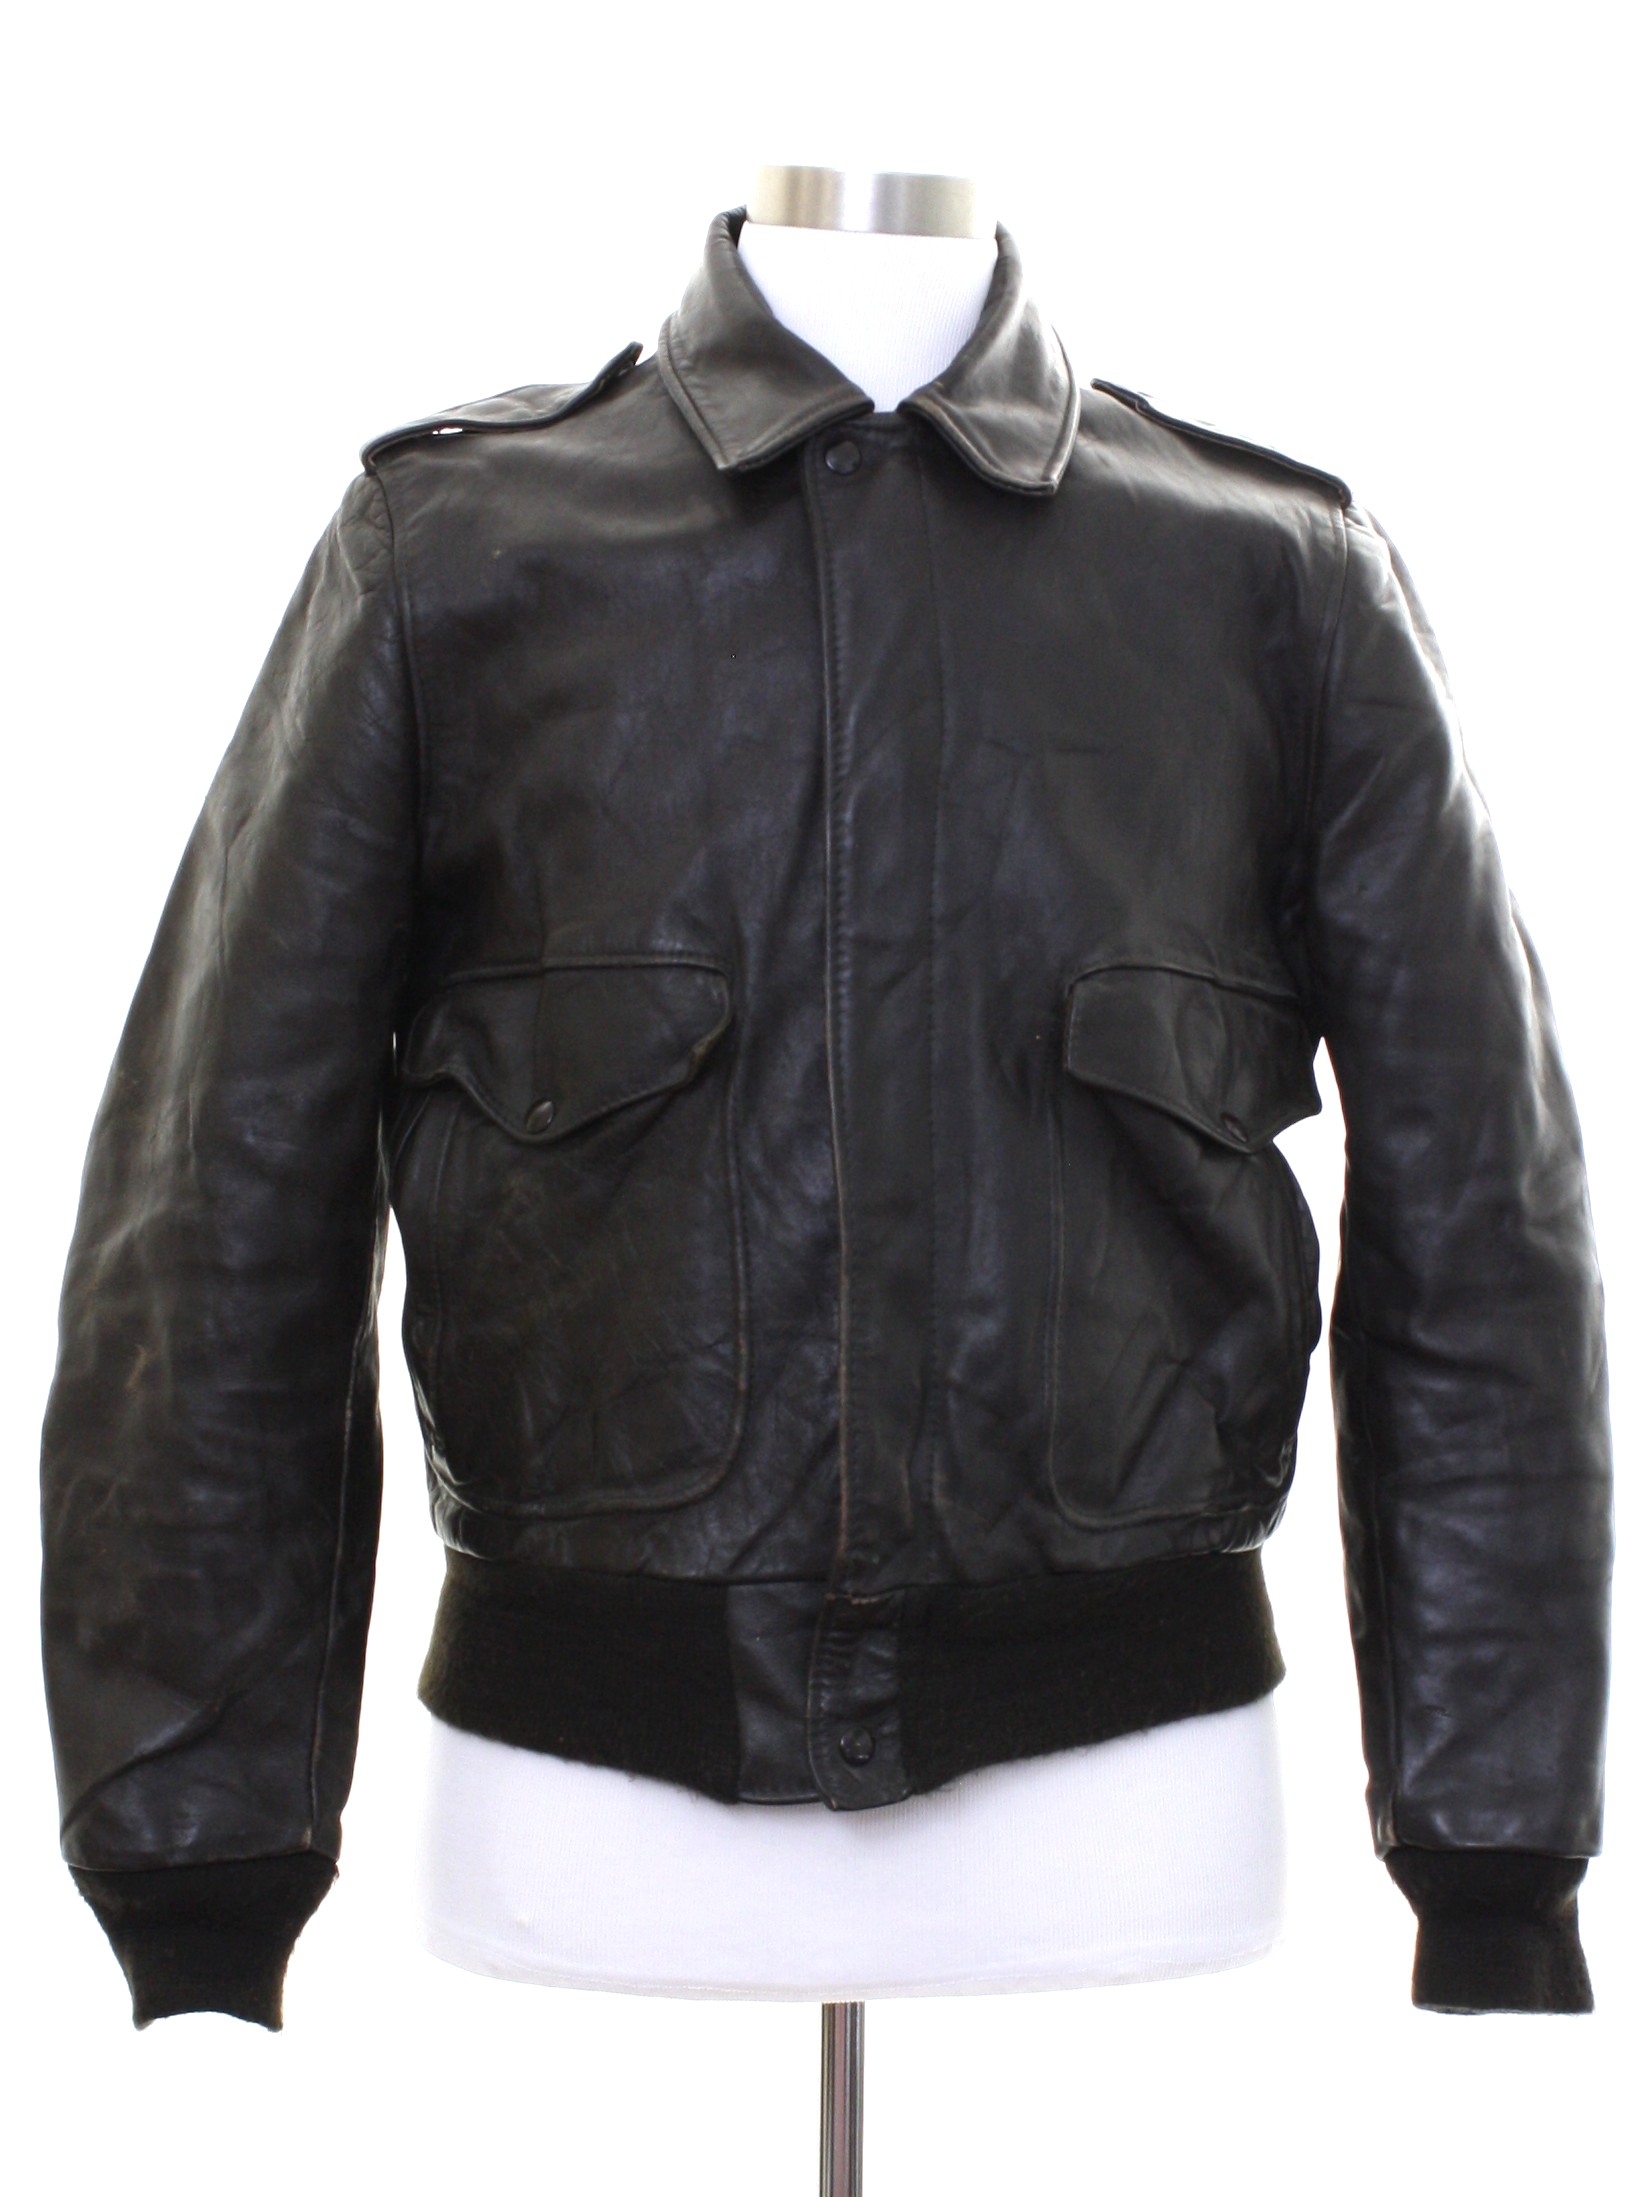 Flight Jacket 1970's Leather Jacket